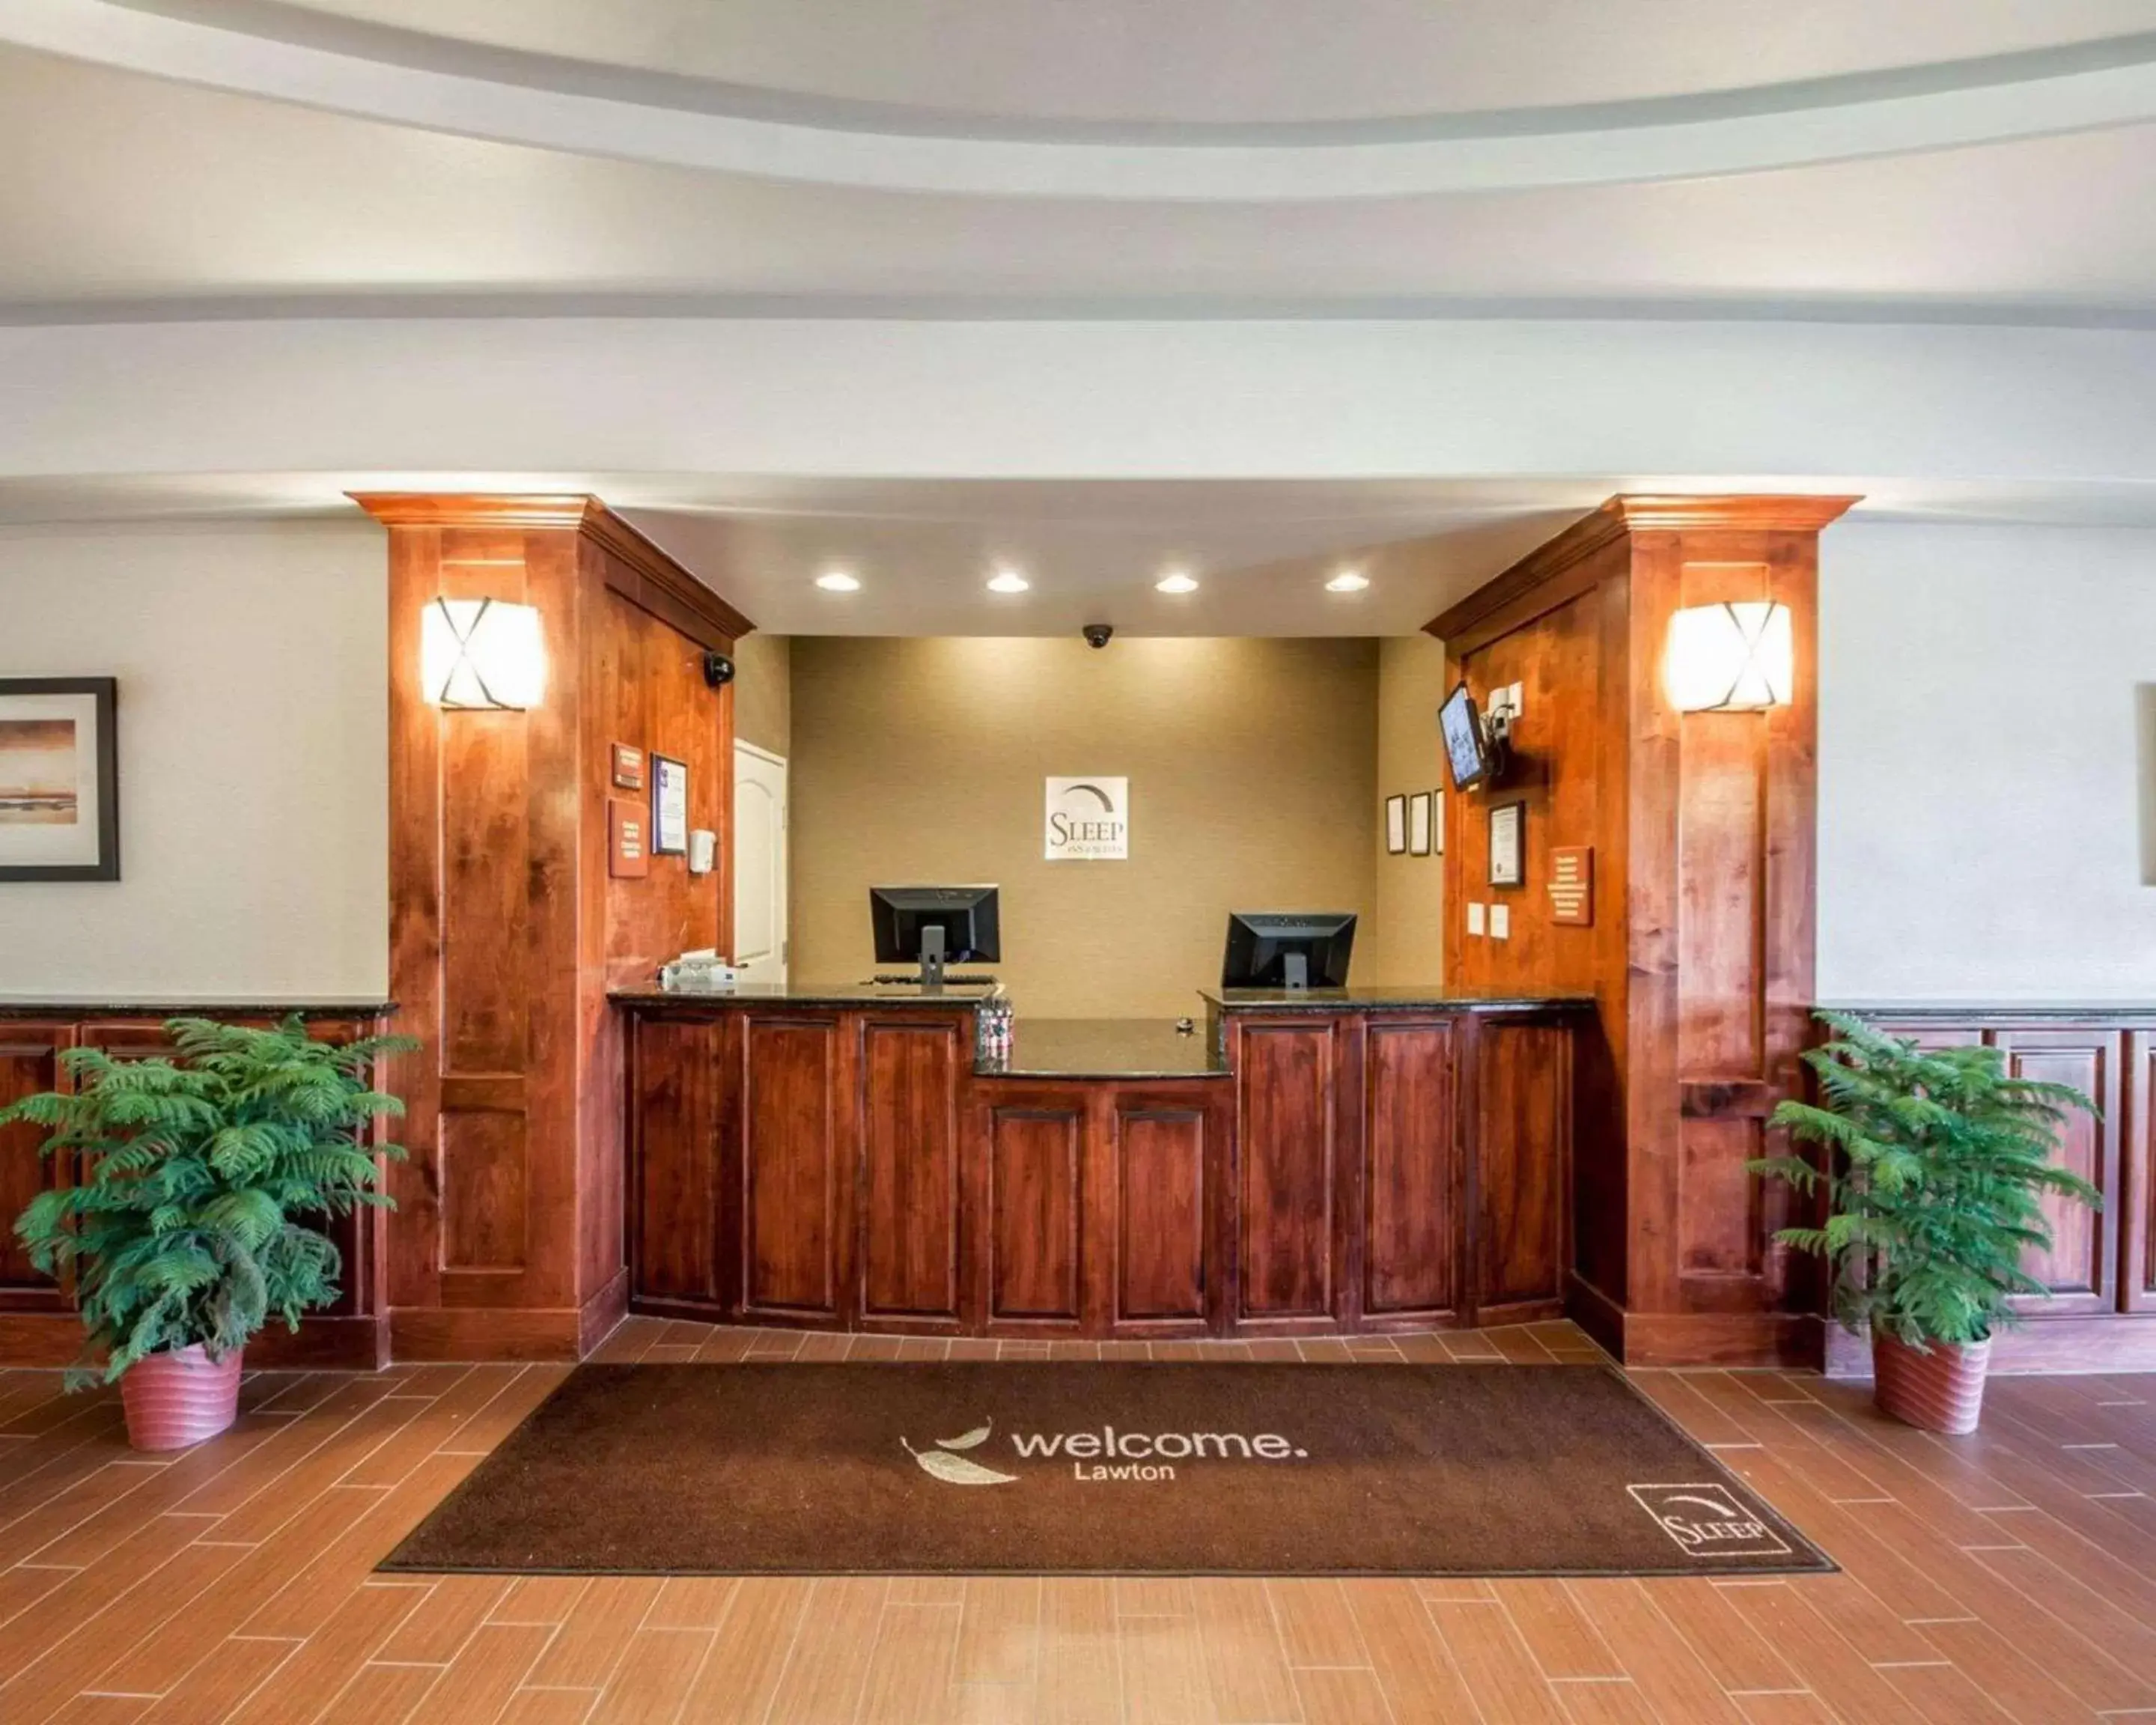 Lobby or reception, Lobby/Reception in Sleep Inn & Suites Lawton Near Fort Sill